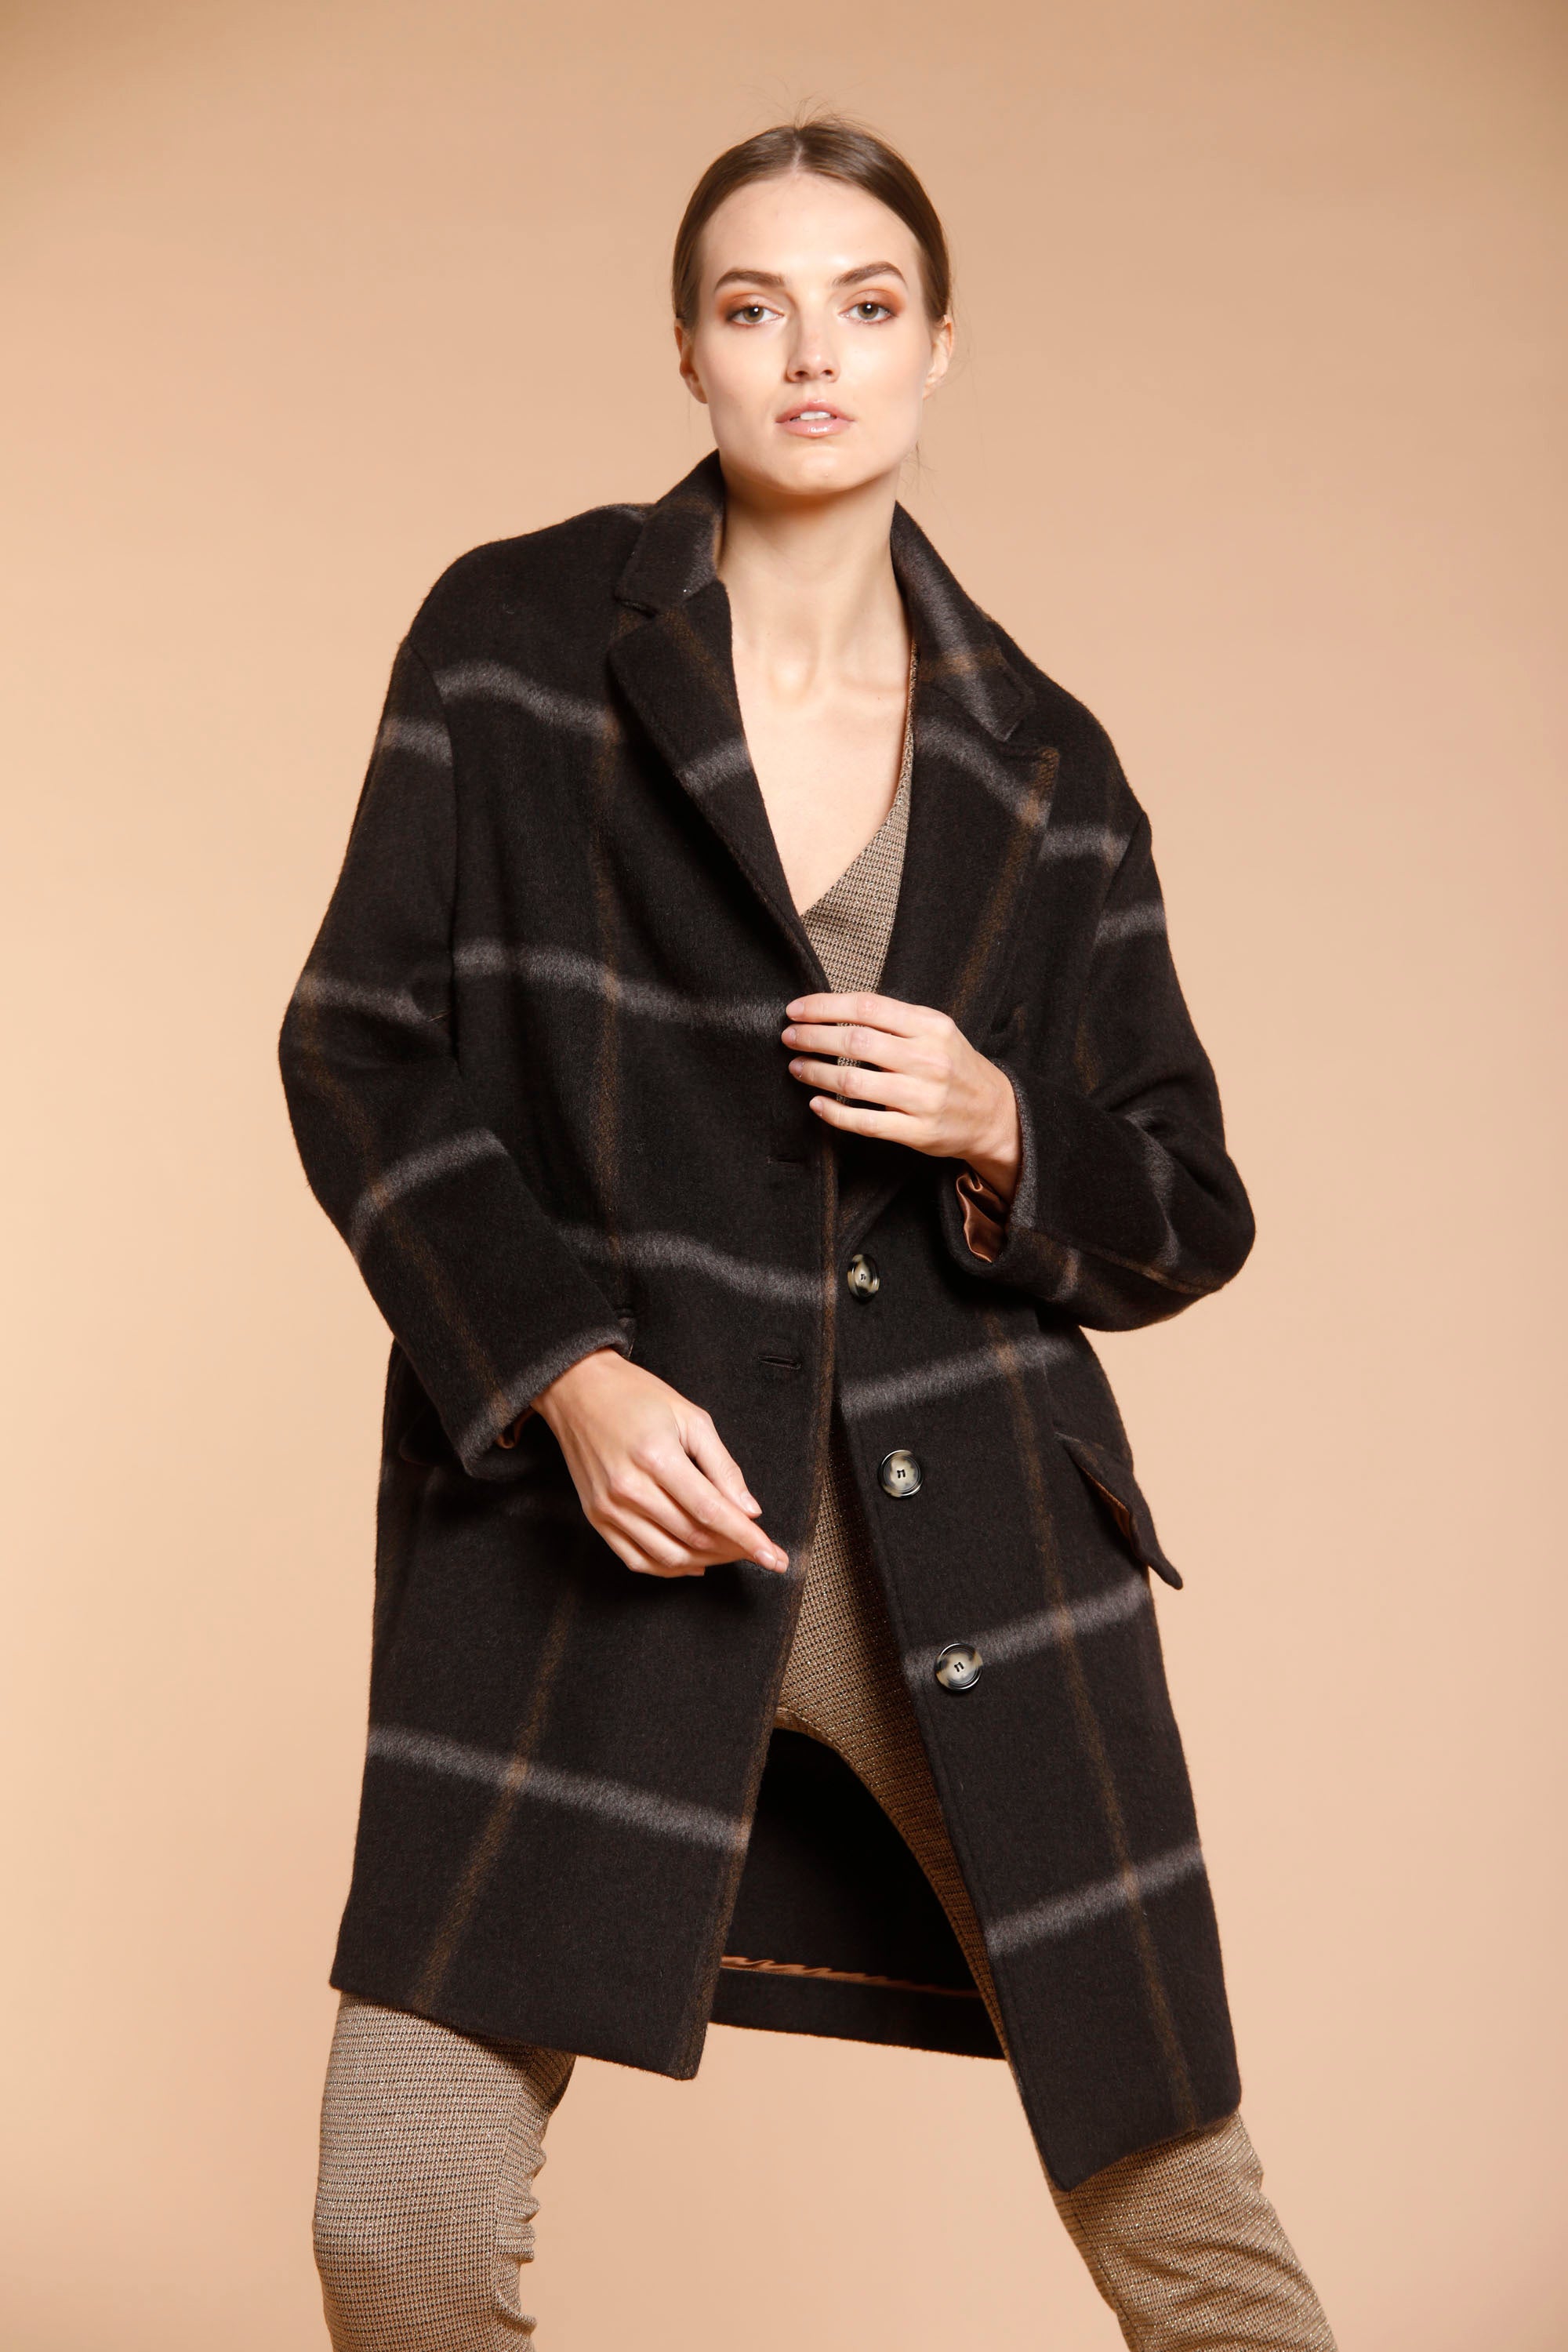 Image 1 de manteau femme en laine modèle Isabel Coat couleur marron motif carré de Mason's